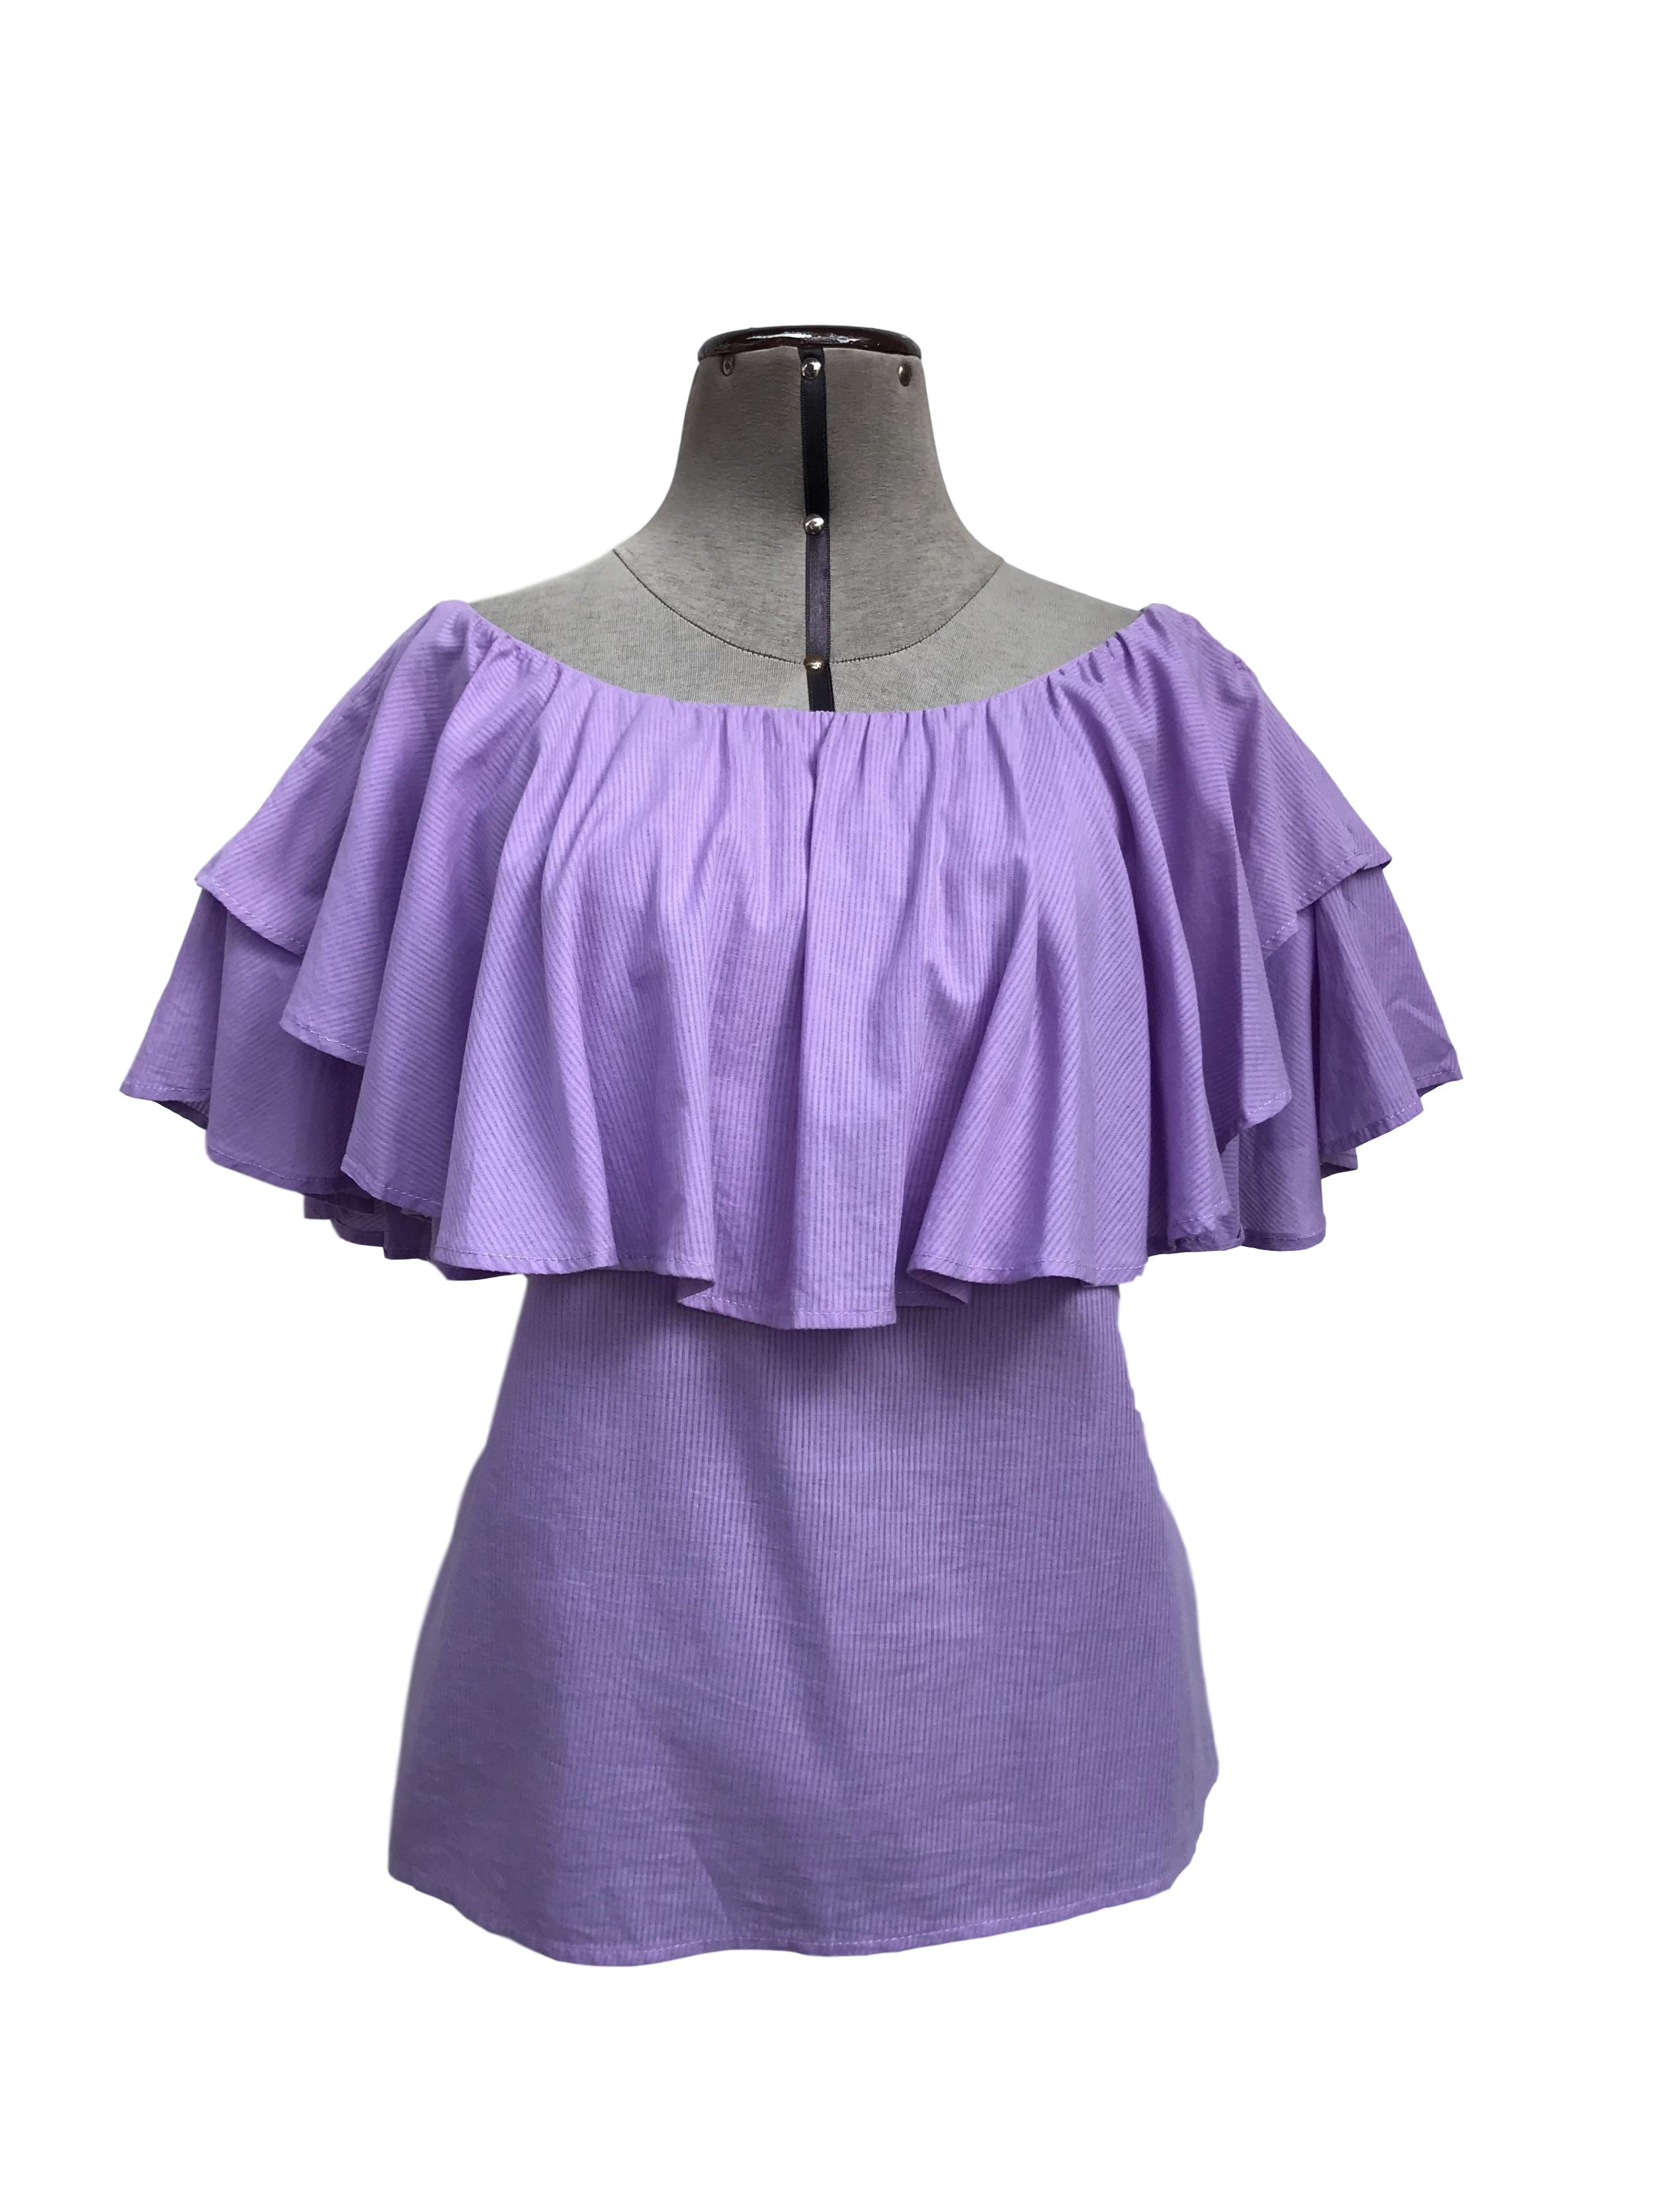 Blusa Bohem lila con rayas al tono, off shoulder con volantes, suelta, tela rica al tacto tipo algodón